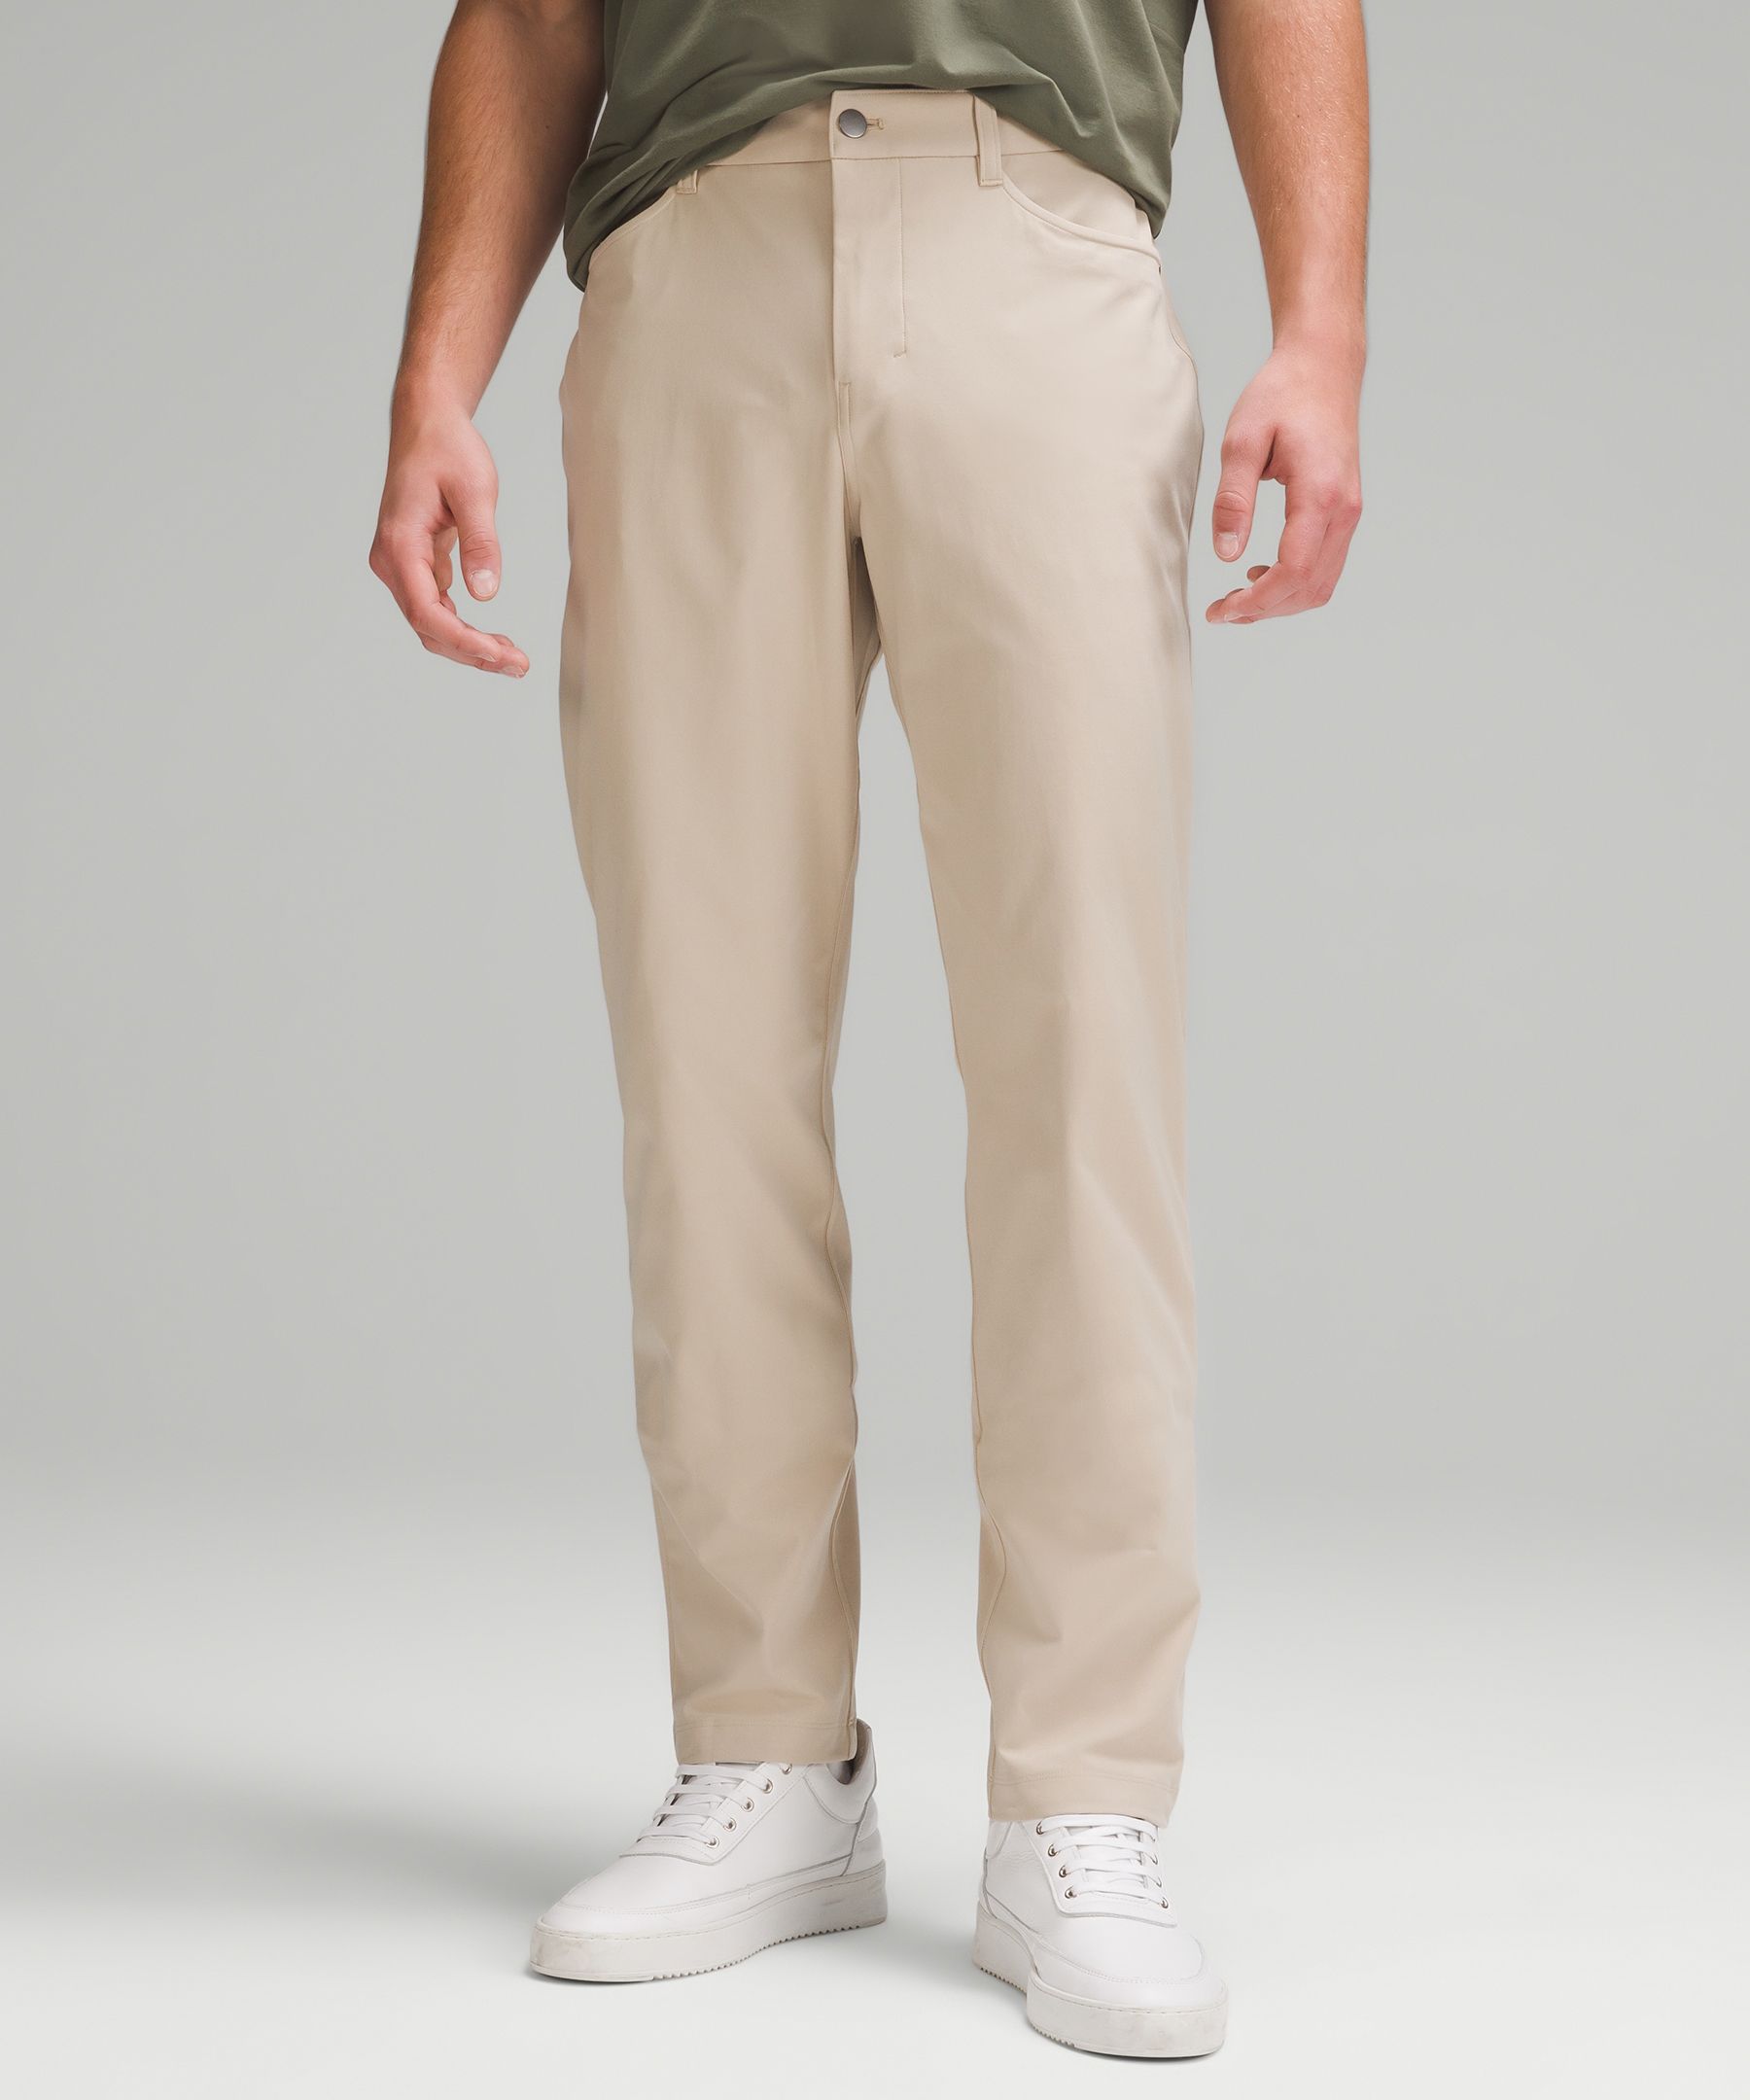 Lululemon athletica ABC Classic-Fit 5 Pocket Pant 28L *Warpstreme, Men's  Trousers